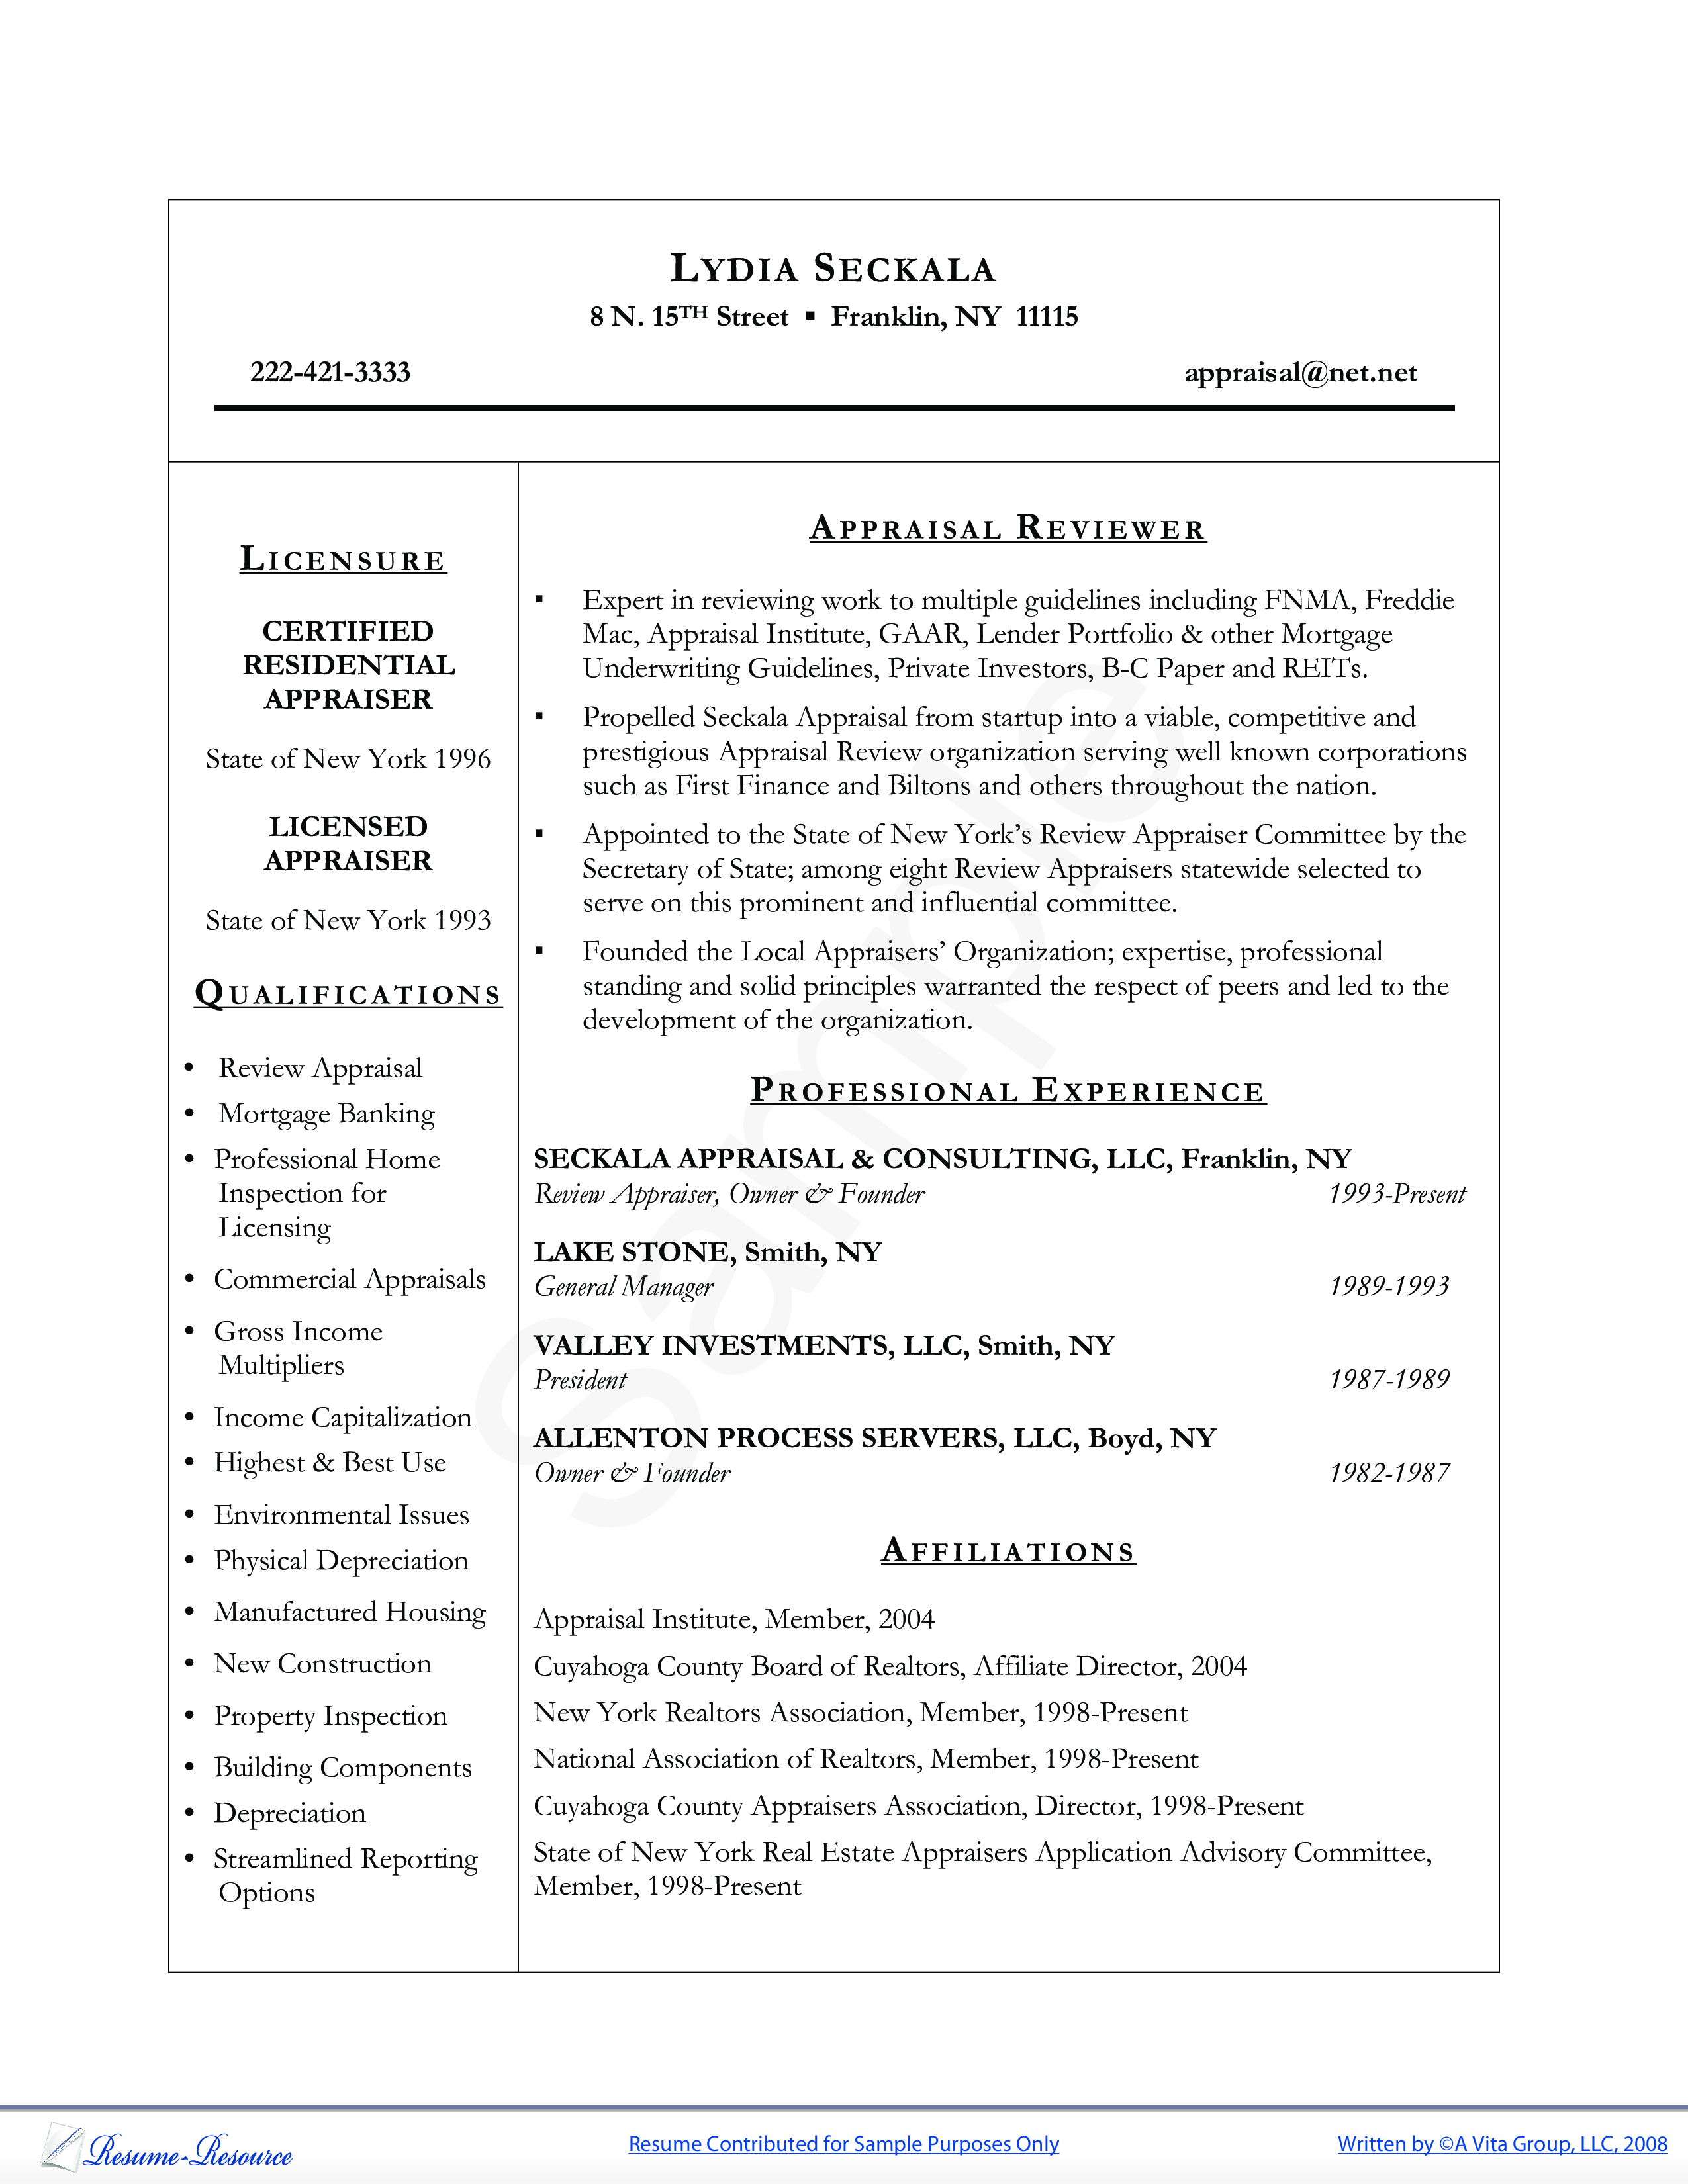 appraiser resume sample template